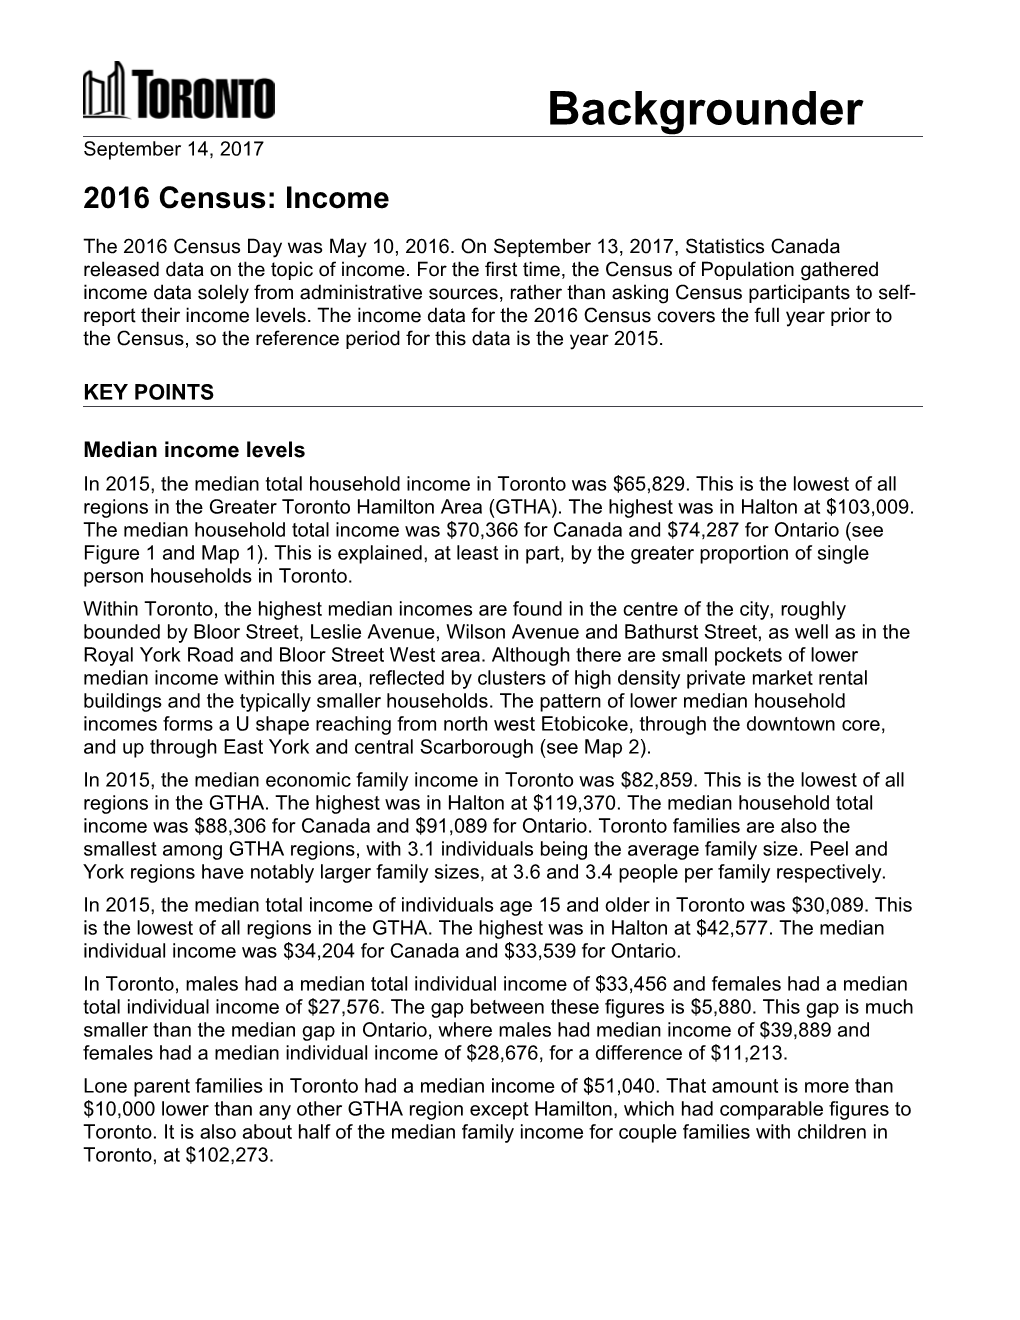 2016 Census: Income